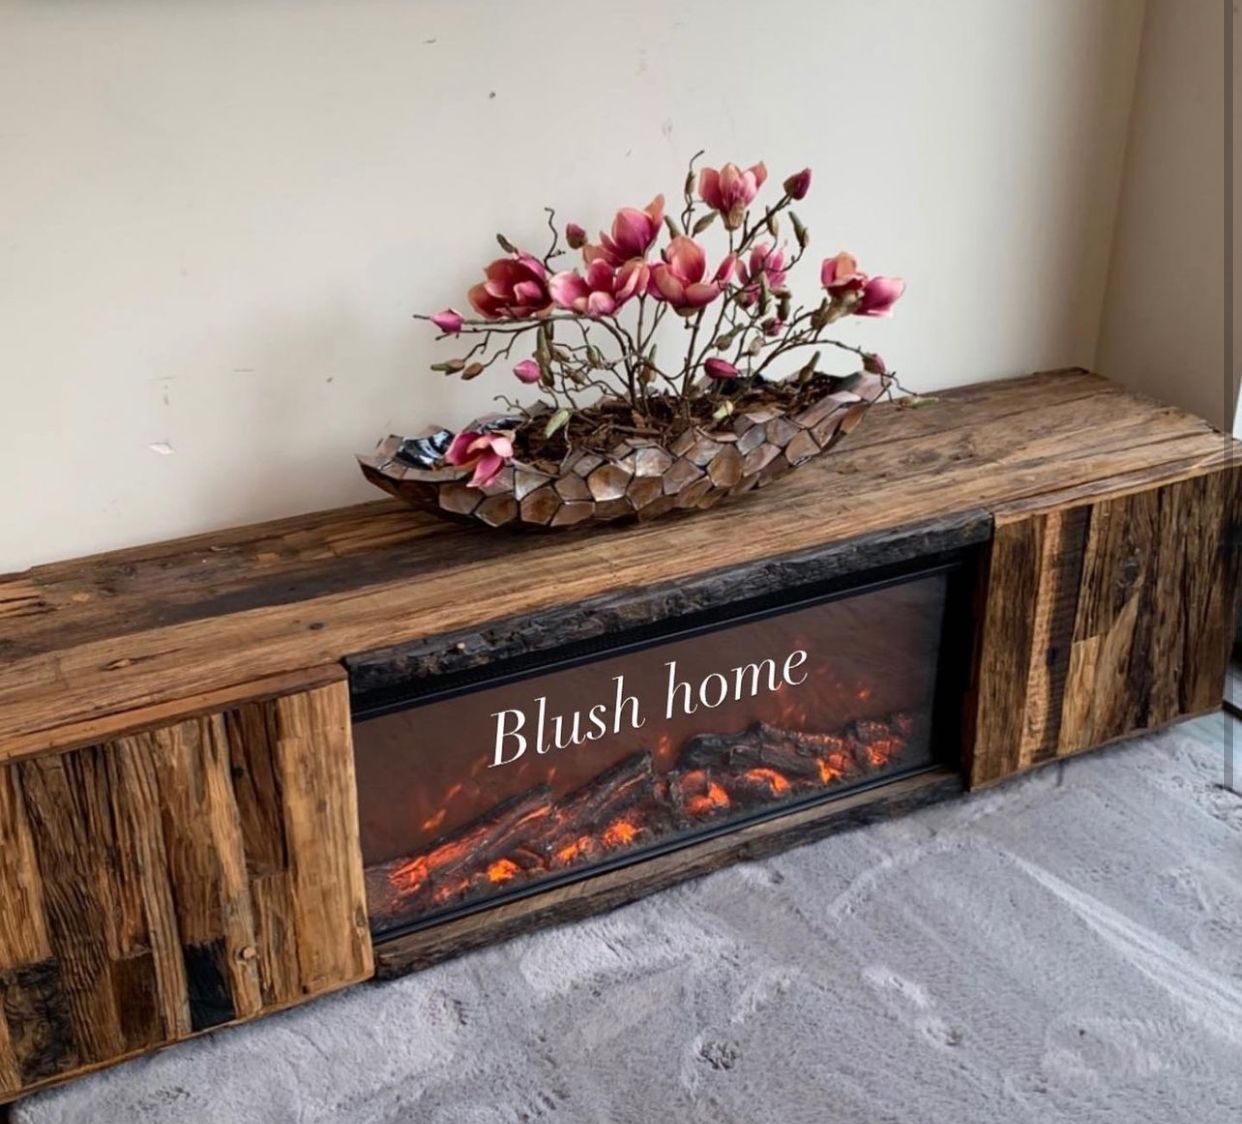 Cheminée décorative en bois massif, cheminée simple, meuble TV chauffant